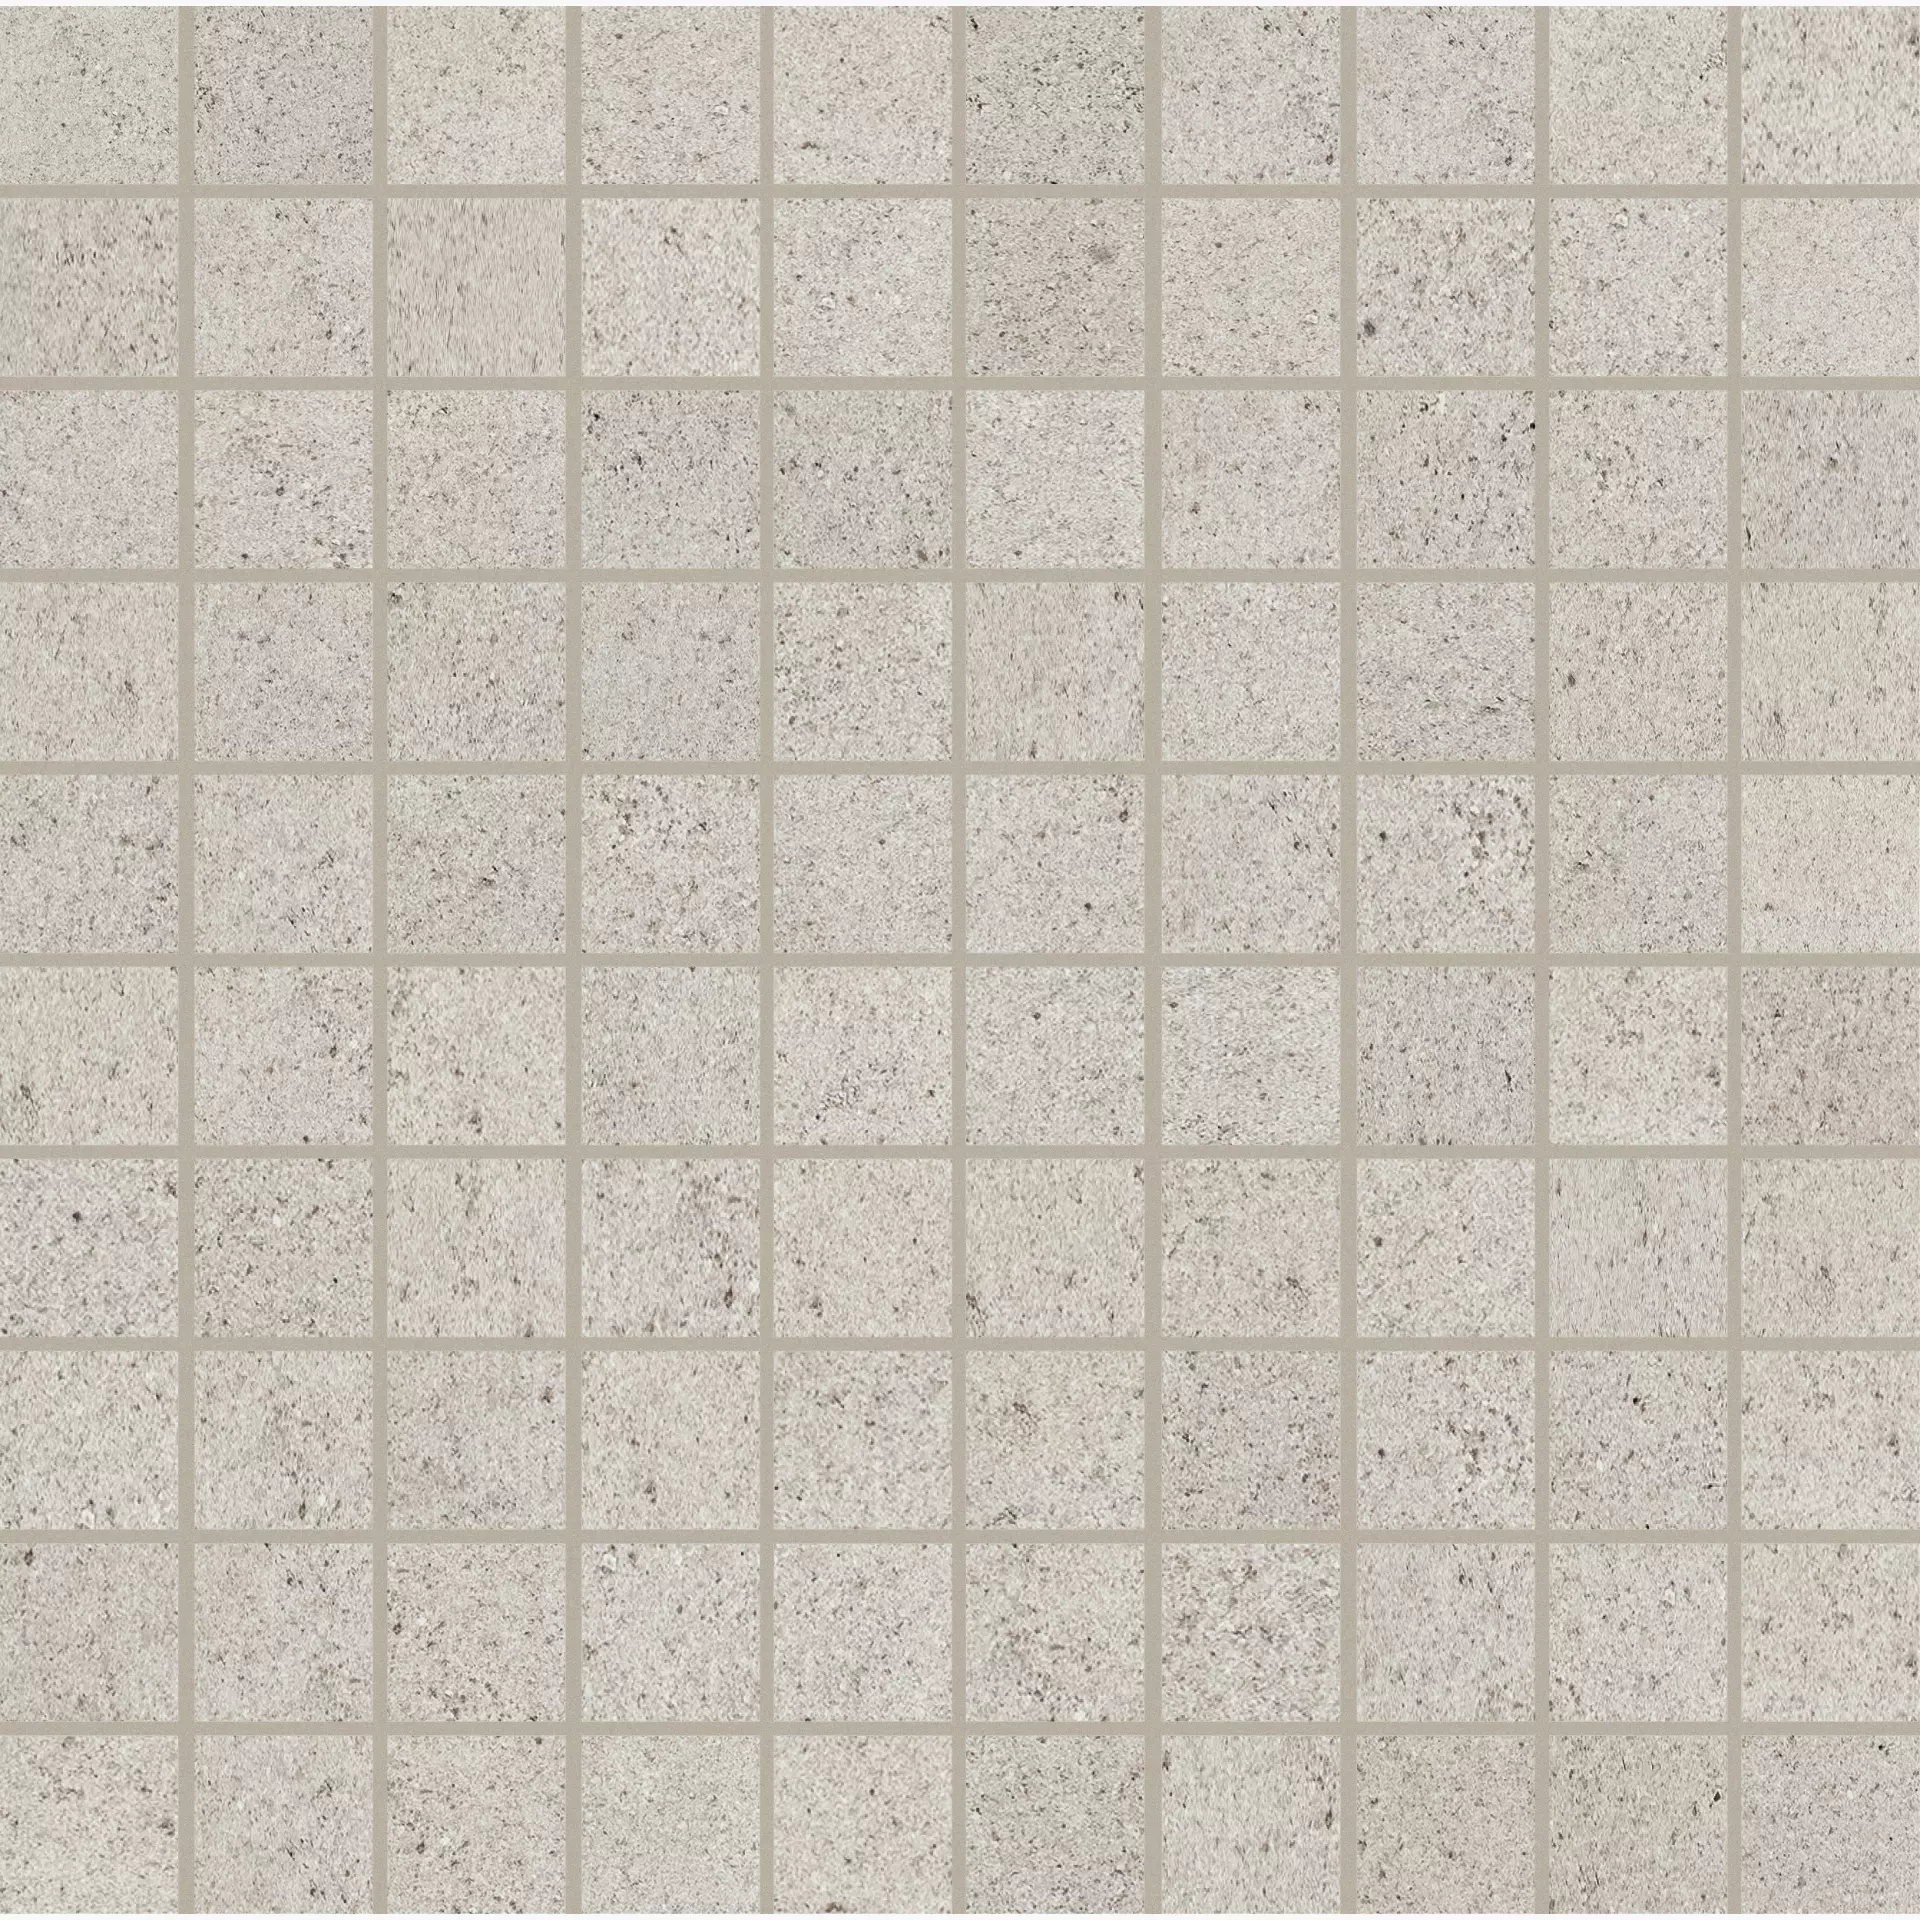 Florim Buildtech Gg White Naturale – Matt Mosaic 3x3 749247 3x3cm rectified 9mm